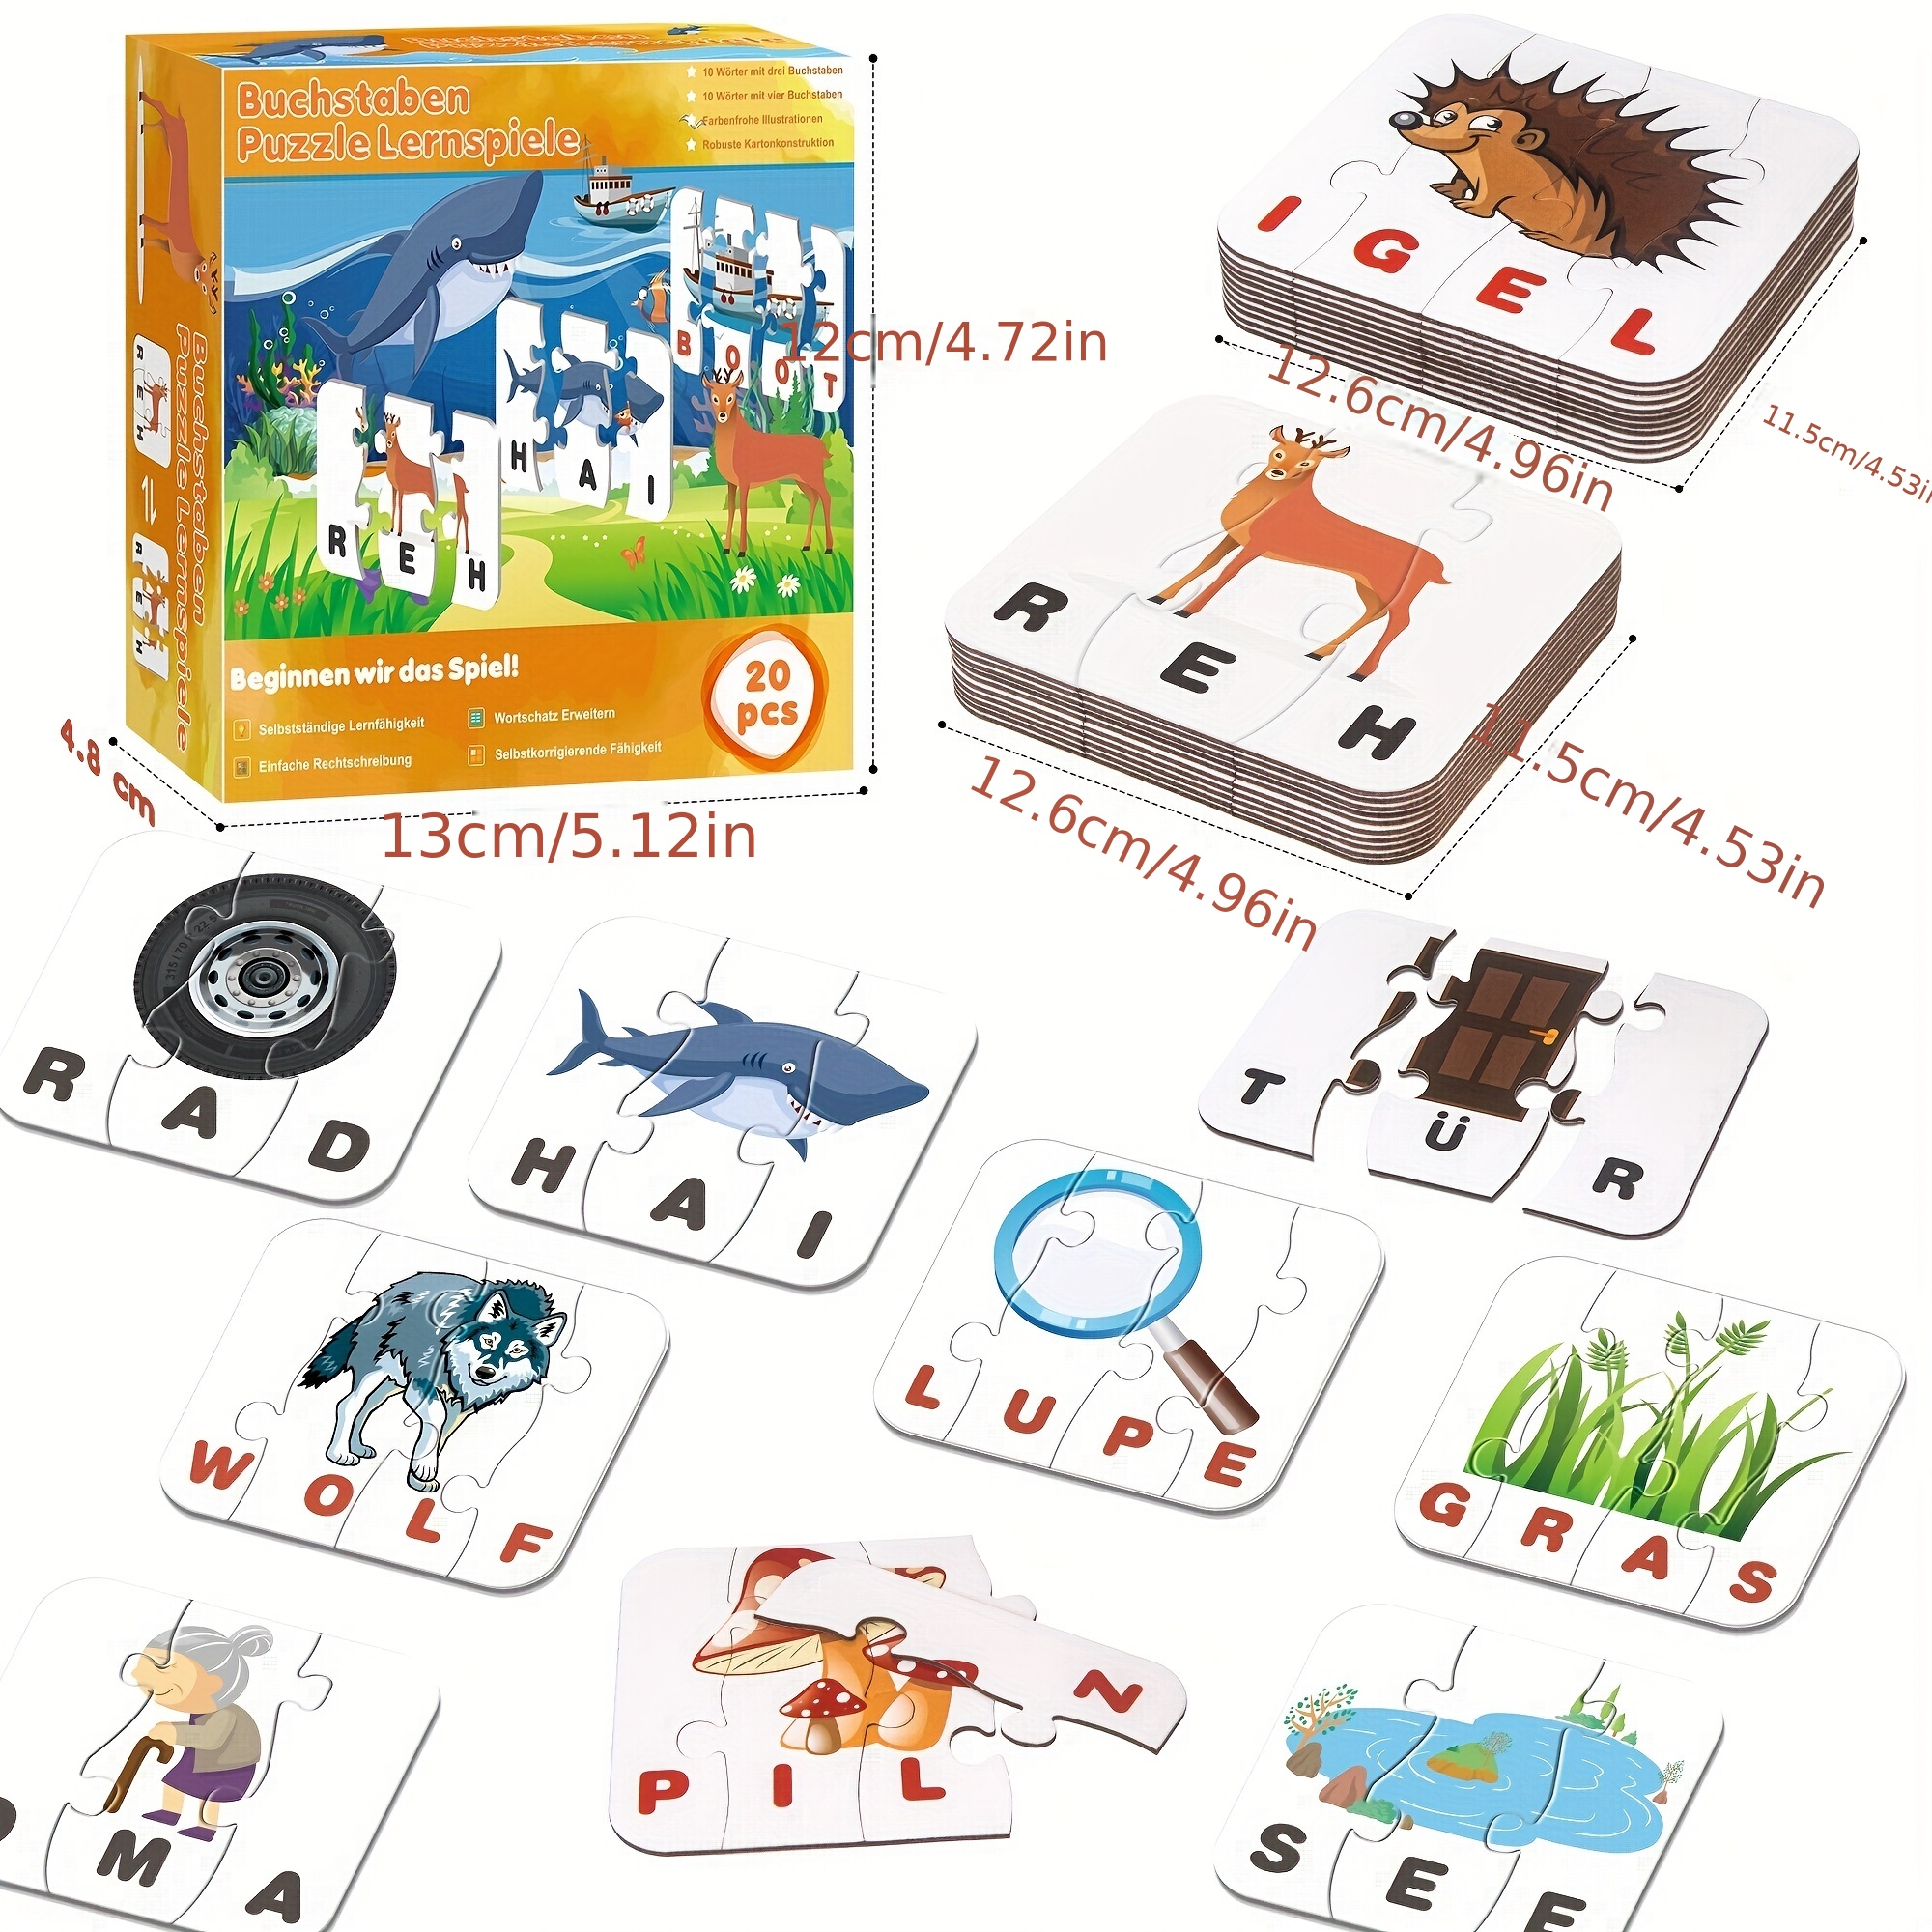 20 juegos educativos para niños y niñas - Juegos y juguetes